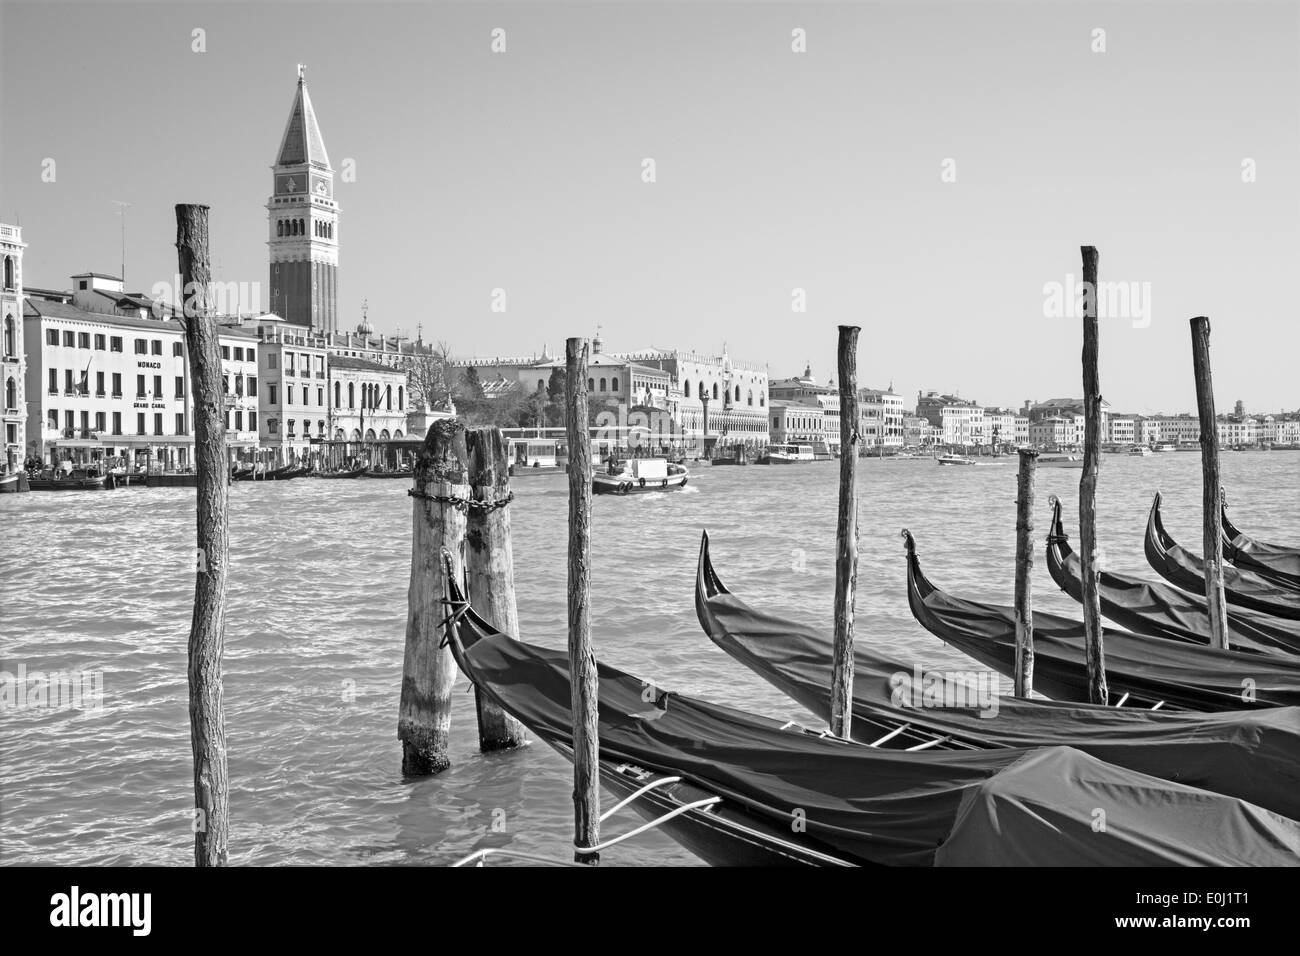 VENICE, ITALY - MARCH 13, 2014: Canal grande and boats for church Santa Maria della Salute. Stock Photo